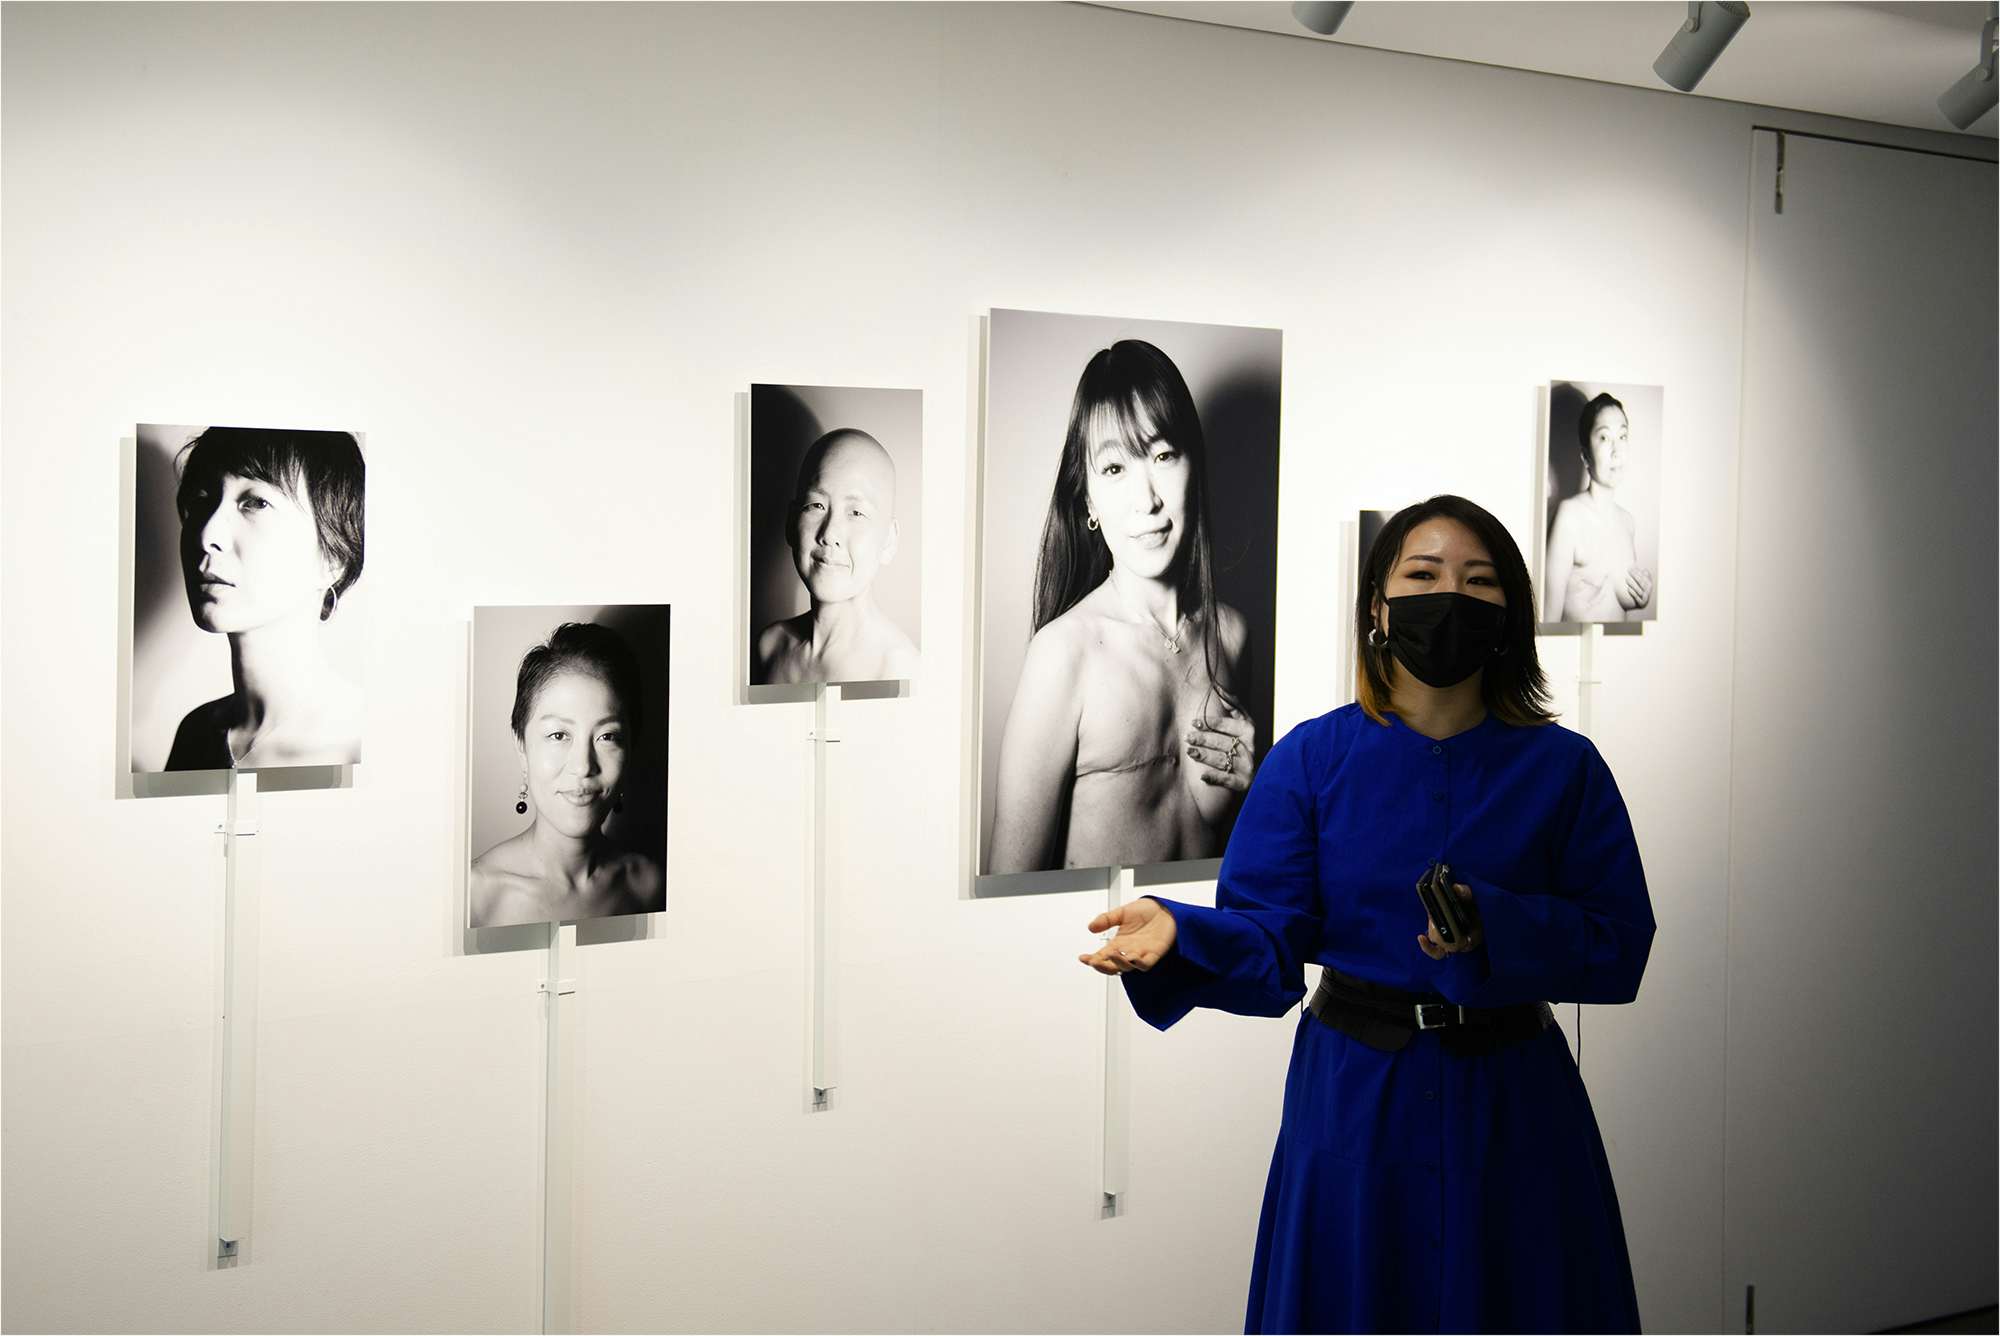 10周年を迎えた「KYOTOGRAPHIE」で改めて「京都で国際写真展を」考える